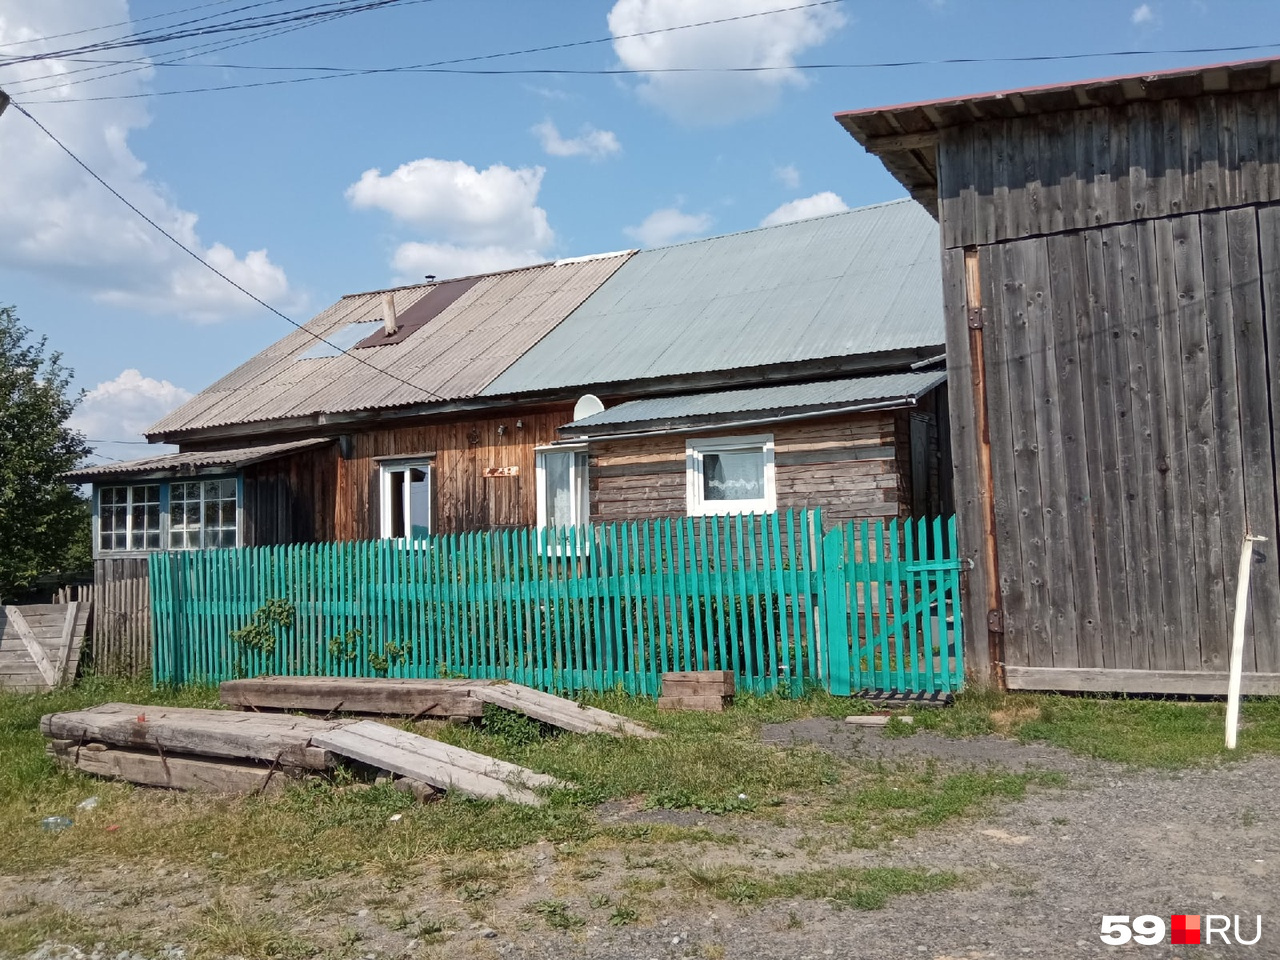 Дом Сергея Шинкевича сейчас пустой